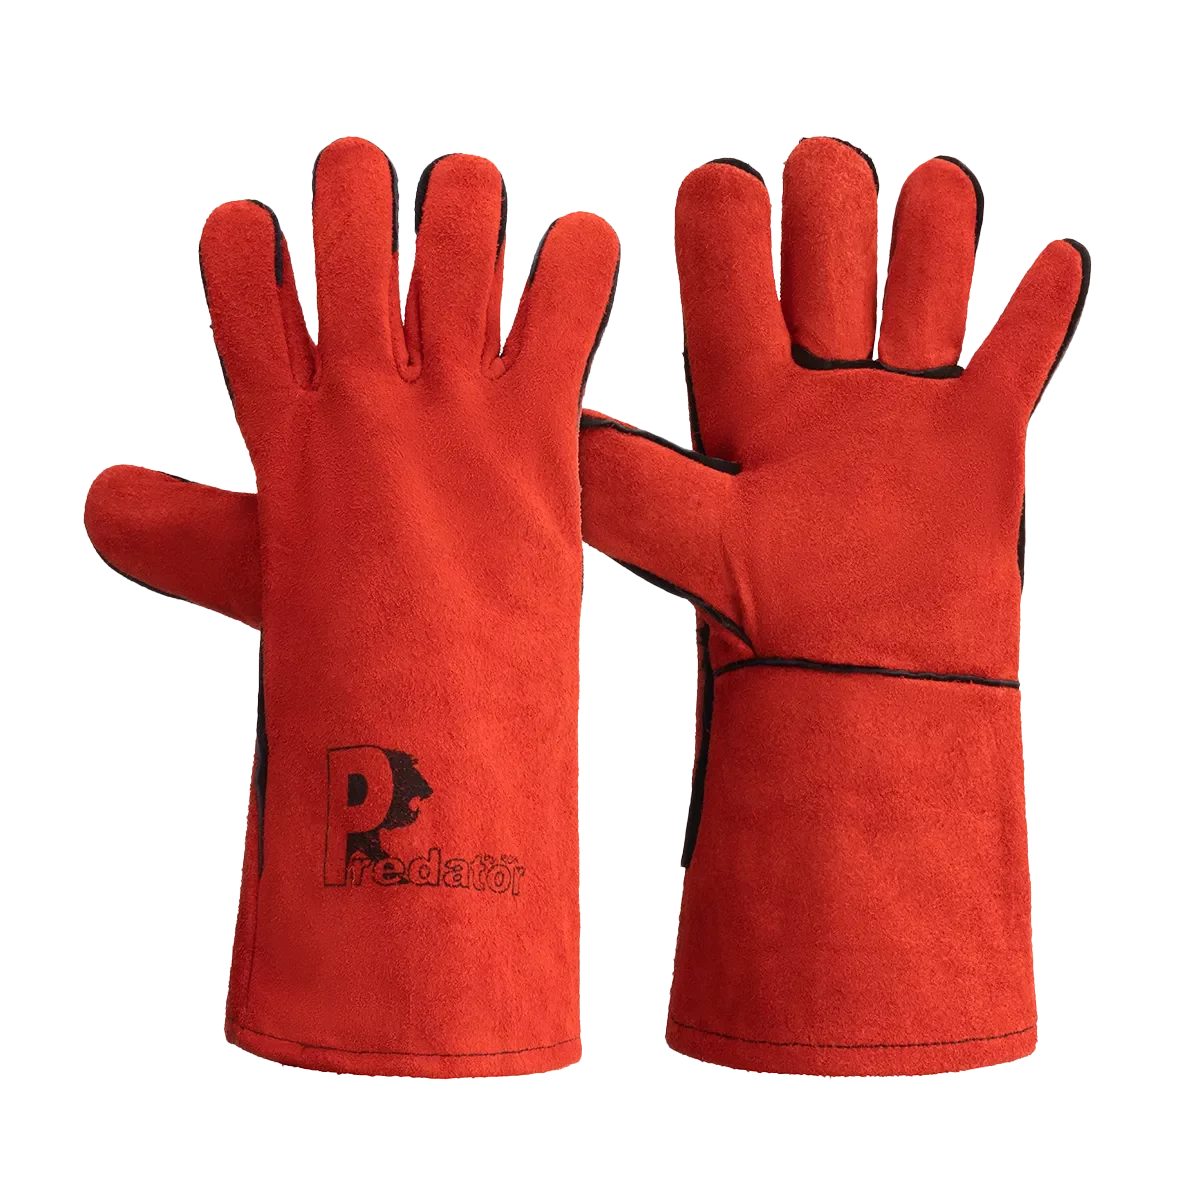 RSW1C Pair Safety Gloves